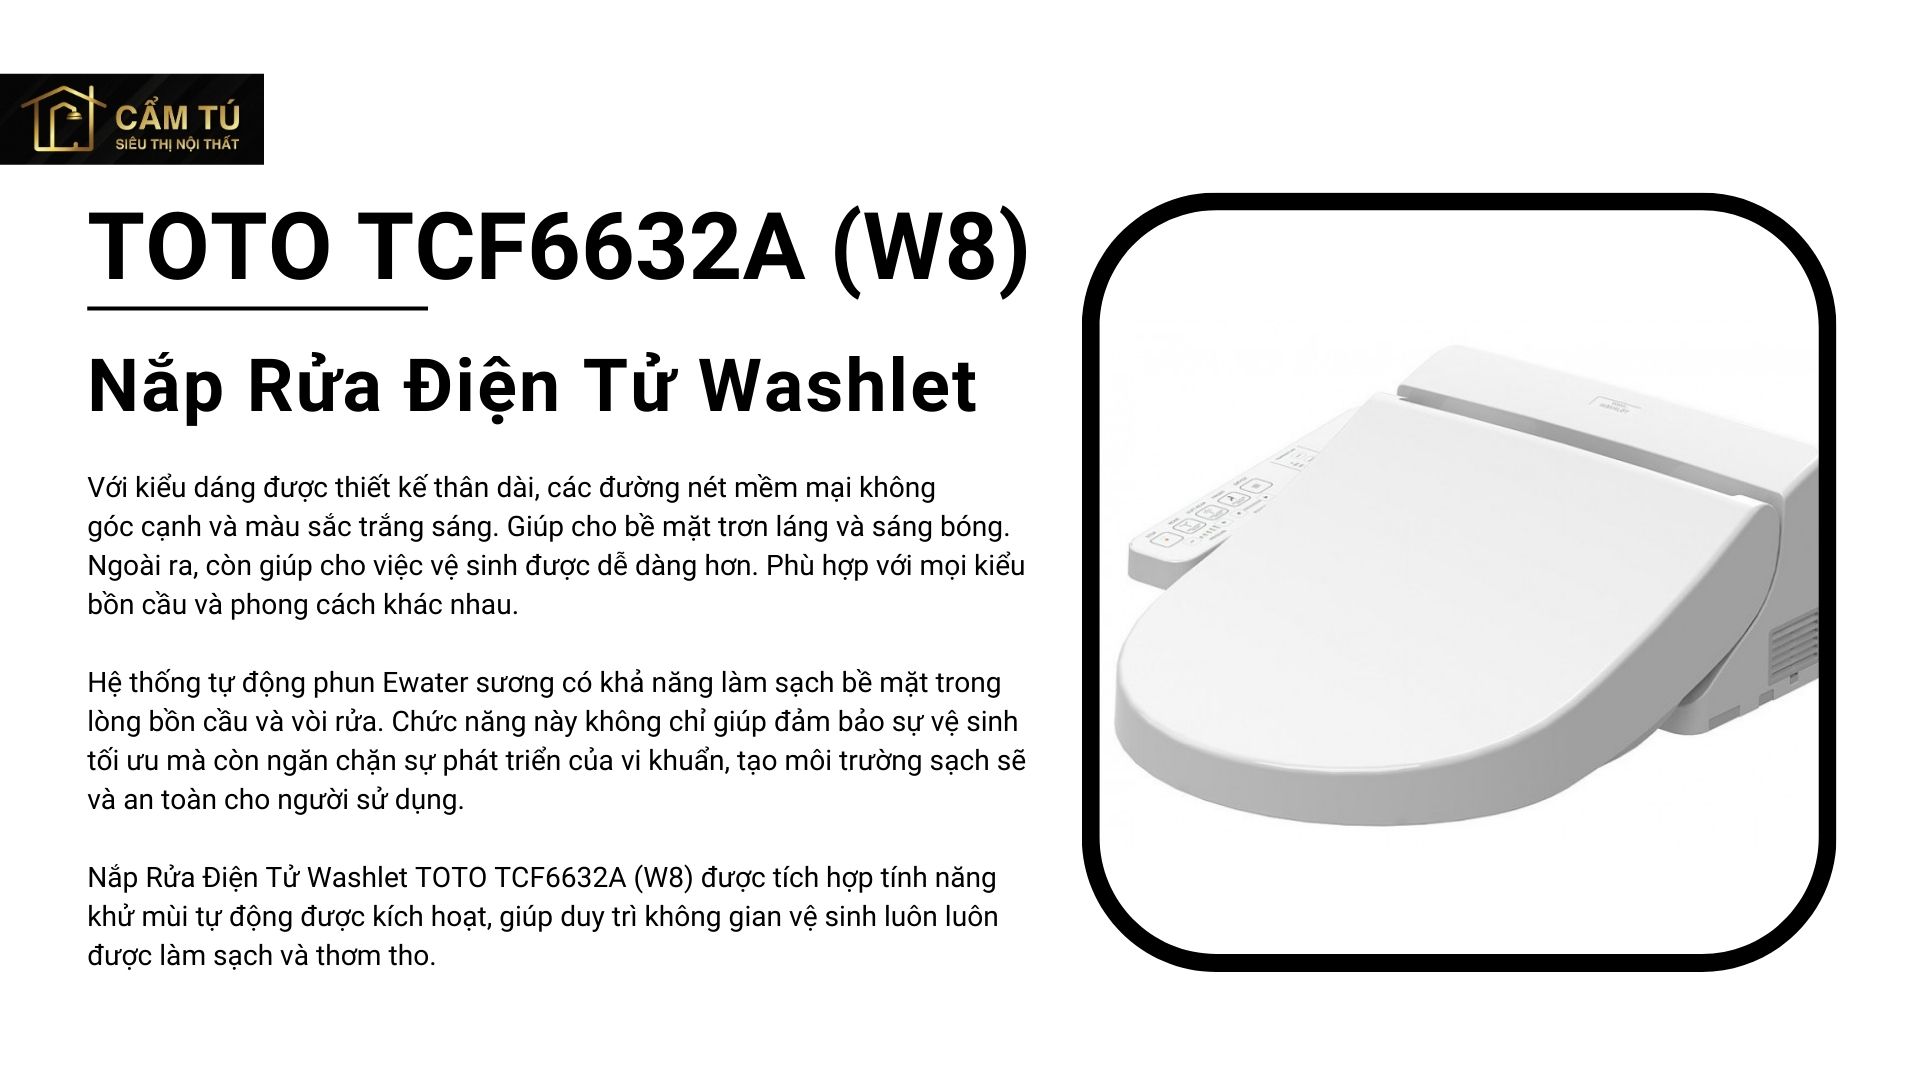 Nắp Rửa Điện Tử Washlet TOTO TCF6632A (W8)